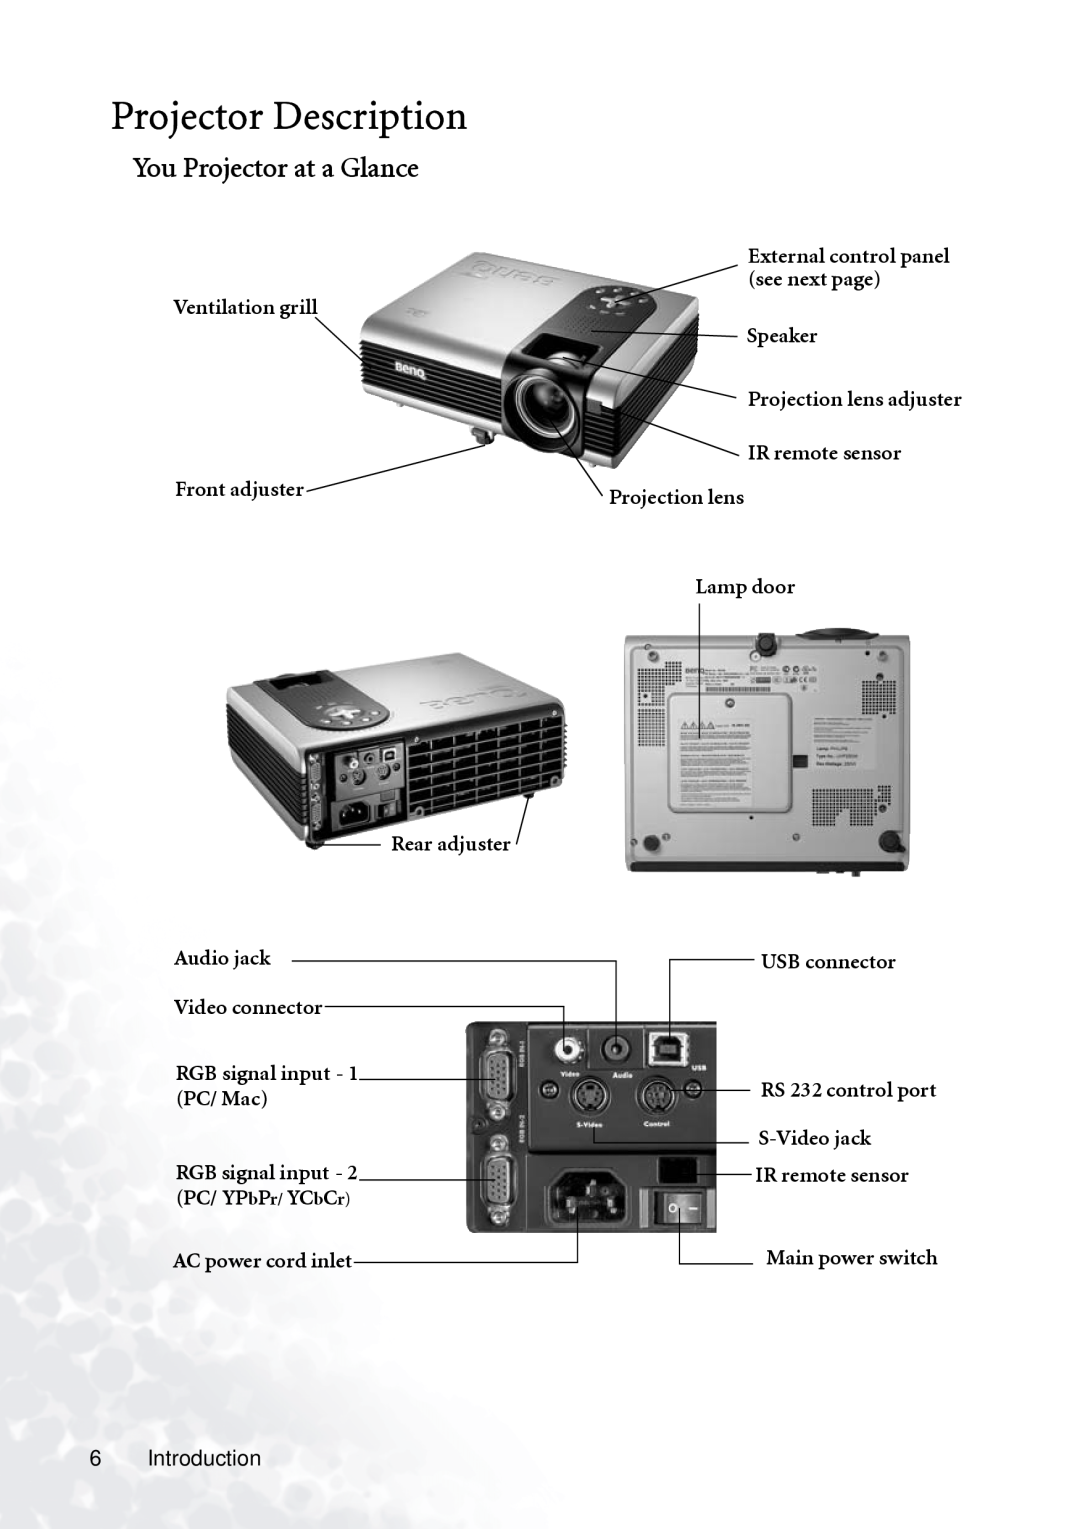 BenQ PB7230 Projector Description, You Projector at a Glance, Ventilation grill Front adjuster Rear adjuster, Lamp door 